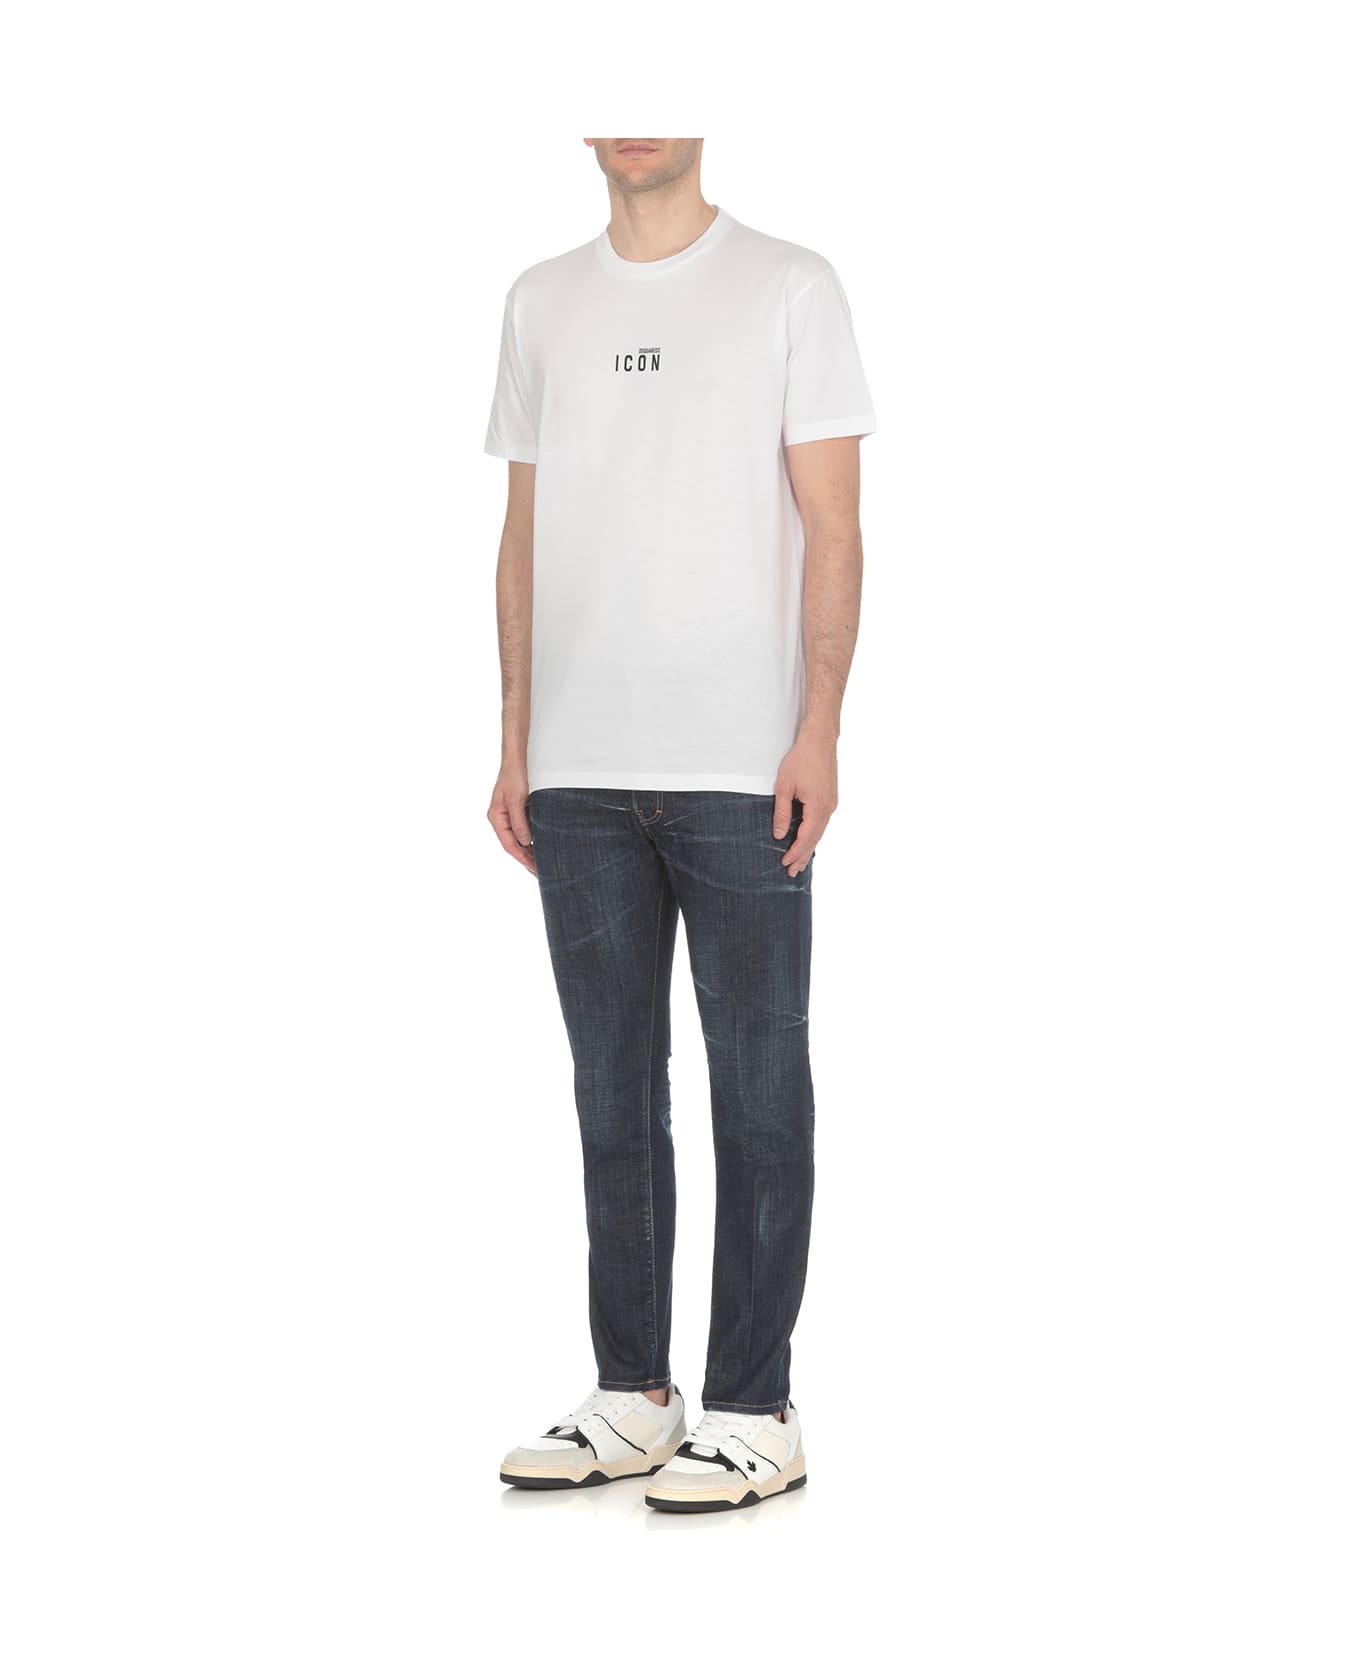 Dsquared2 White Cotton T-shirt - 989 シャツ